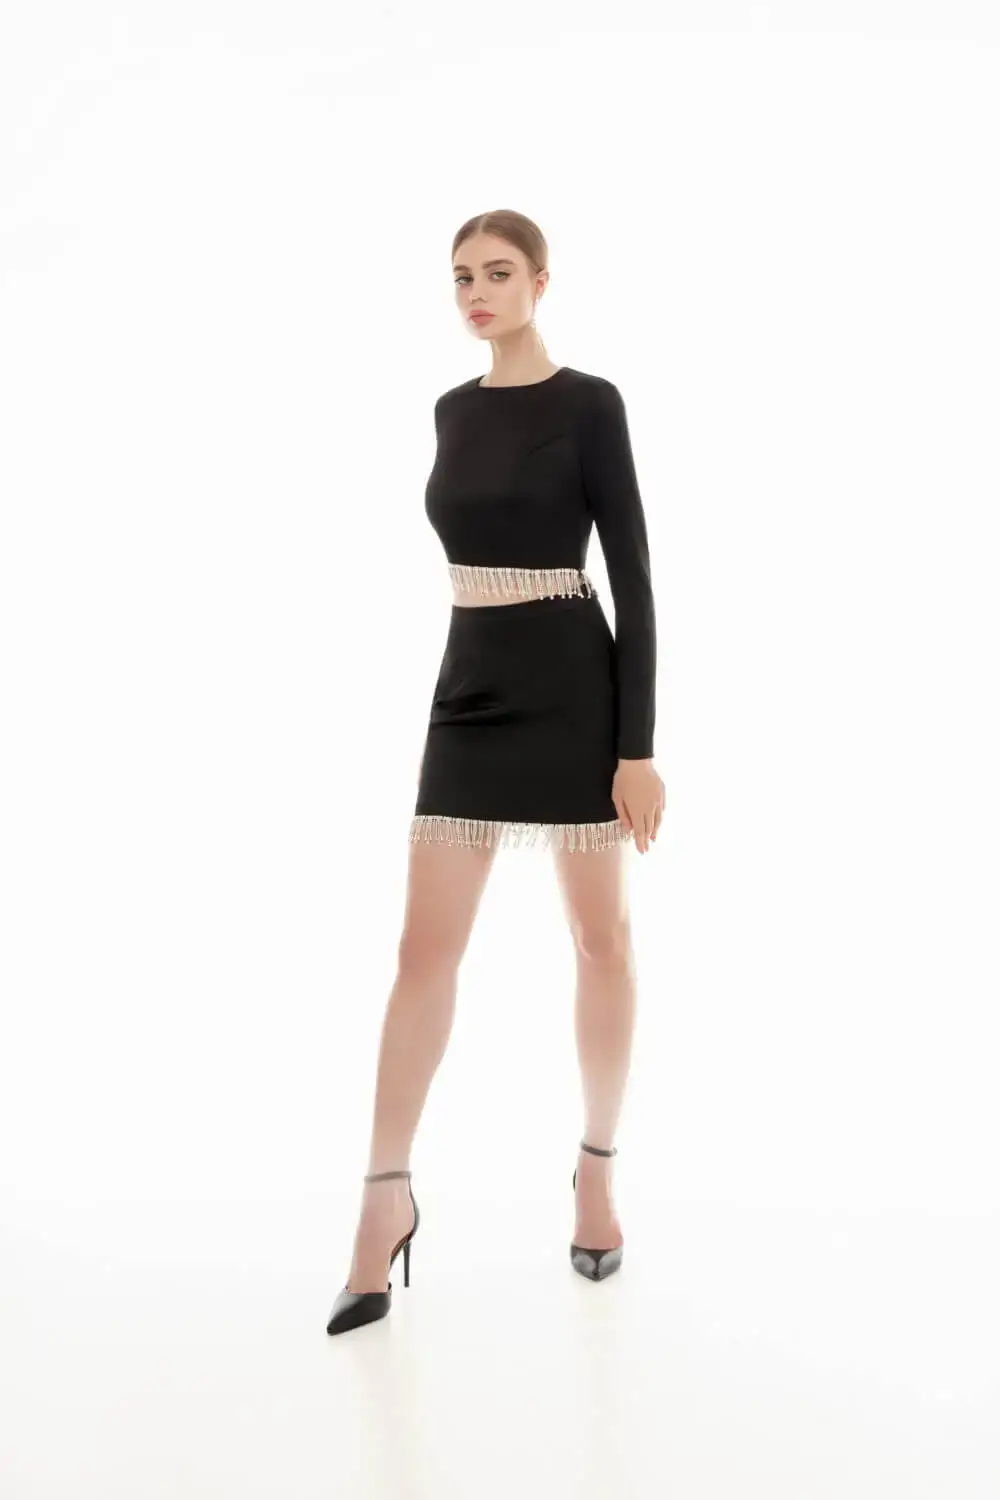 Crystal Fringe Black Skirt